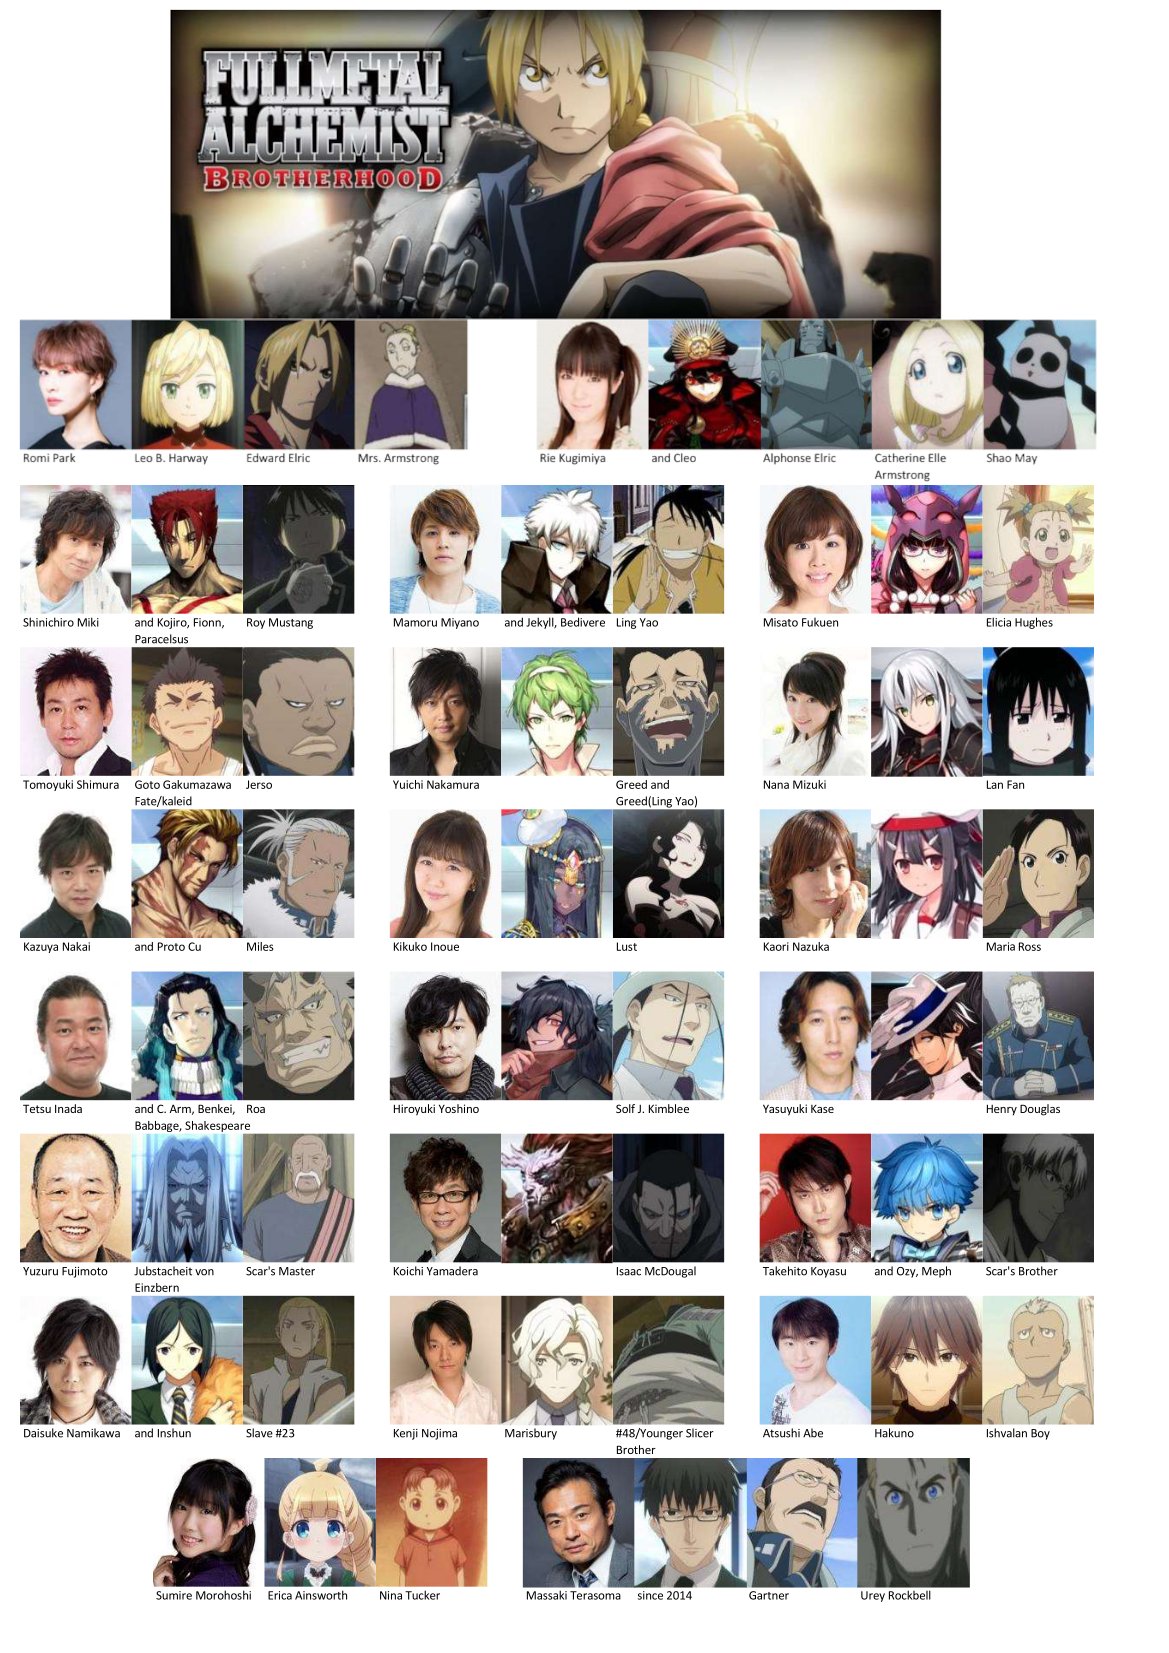 fmab character tier list : r/FullmetalAlchemist